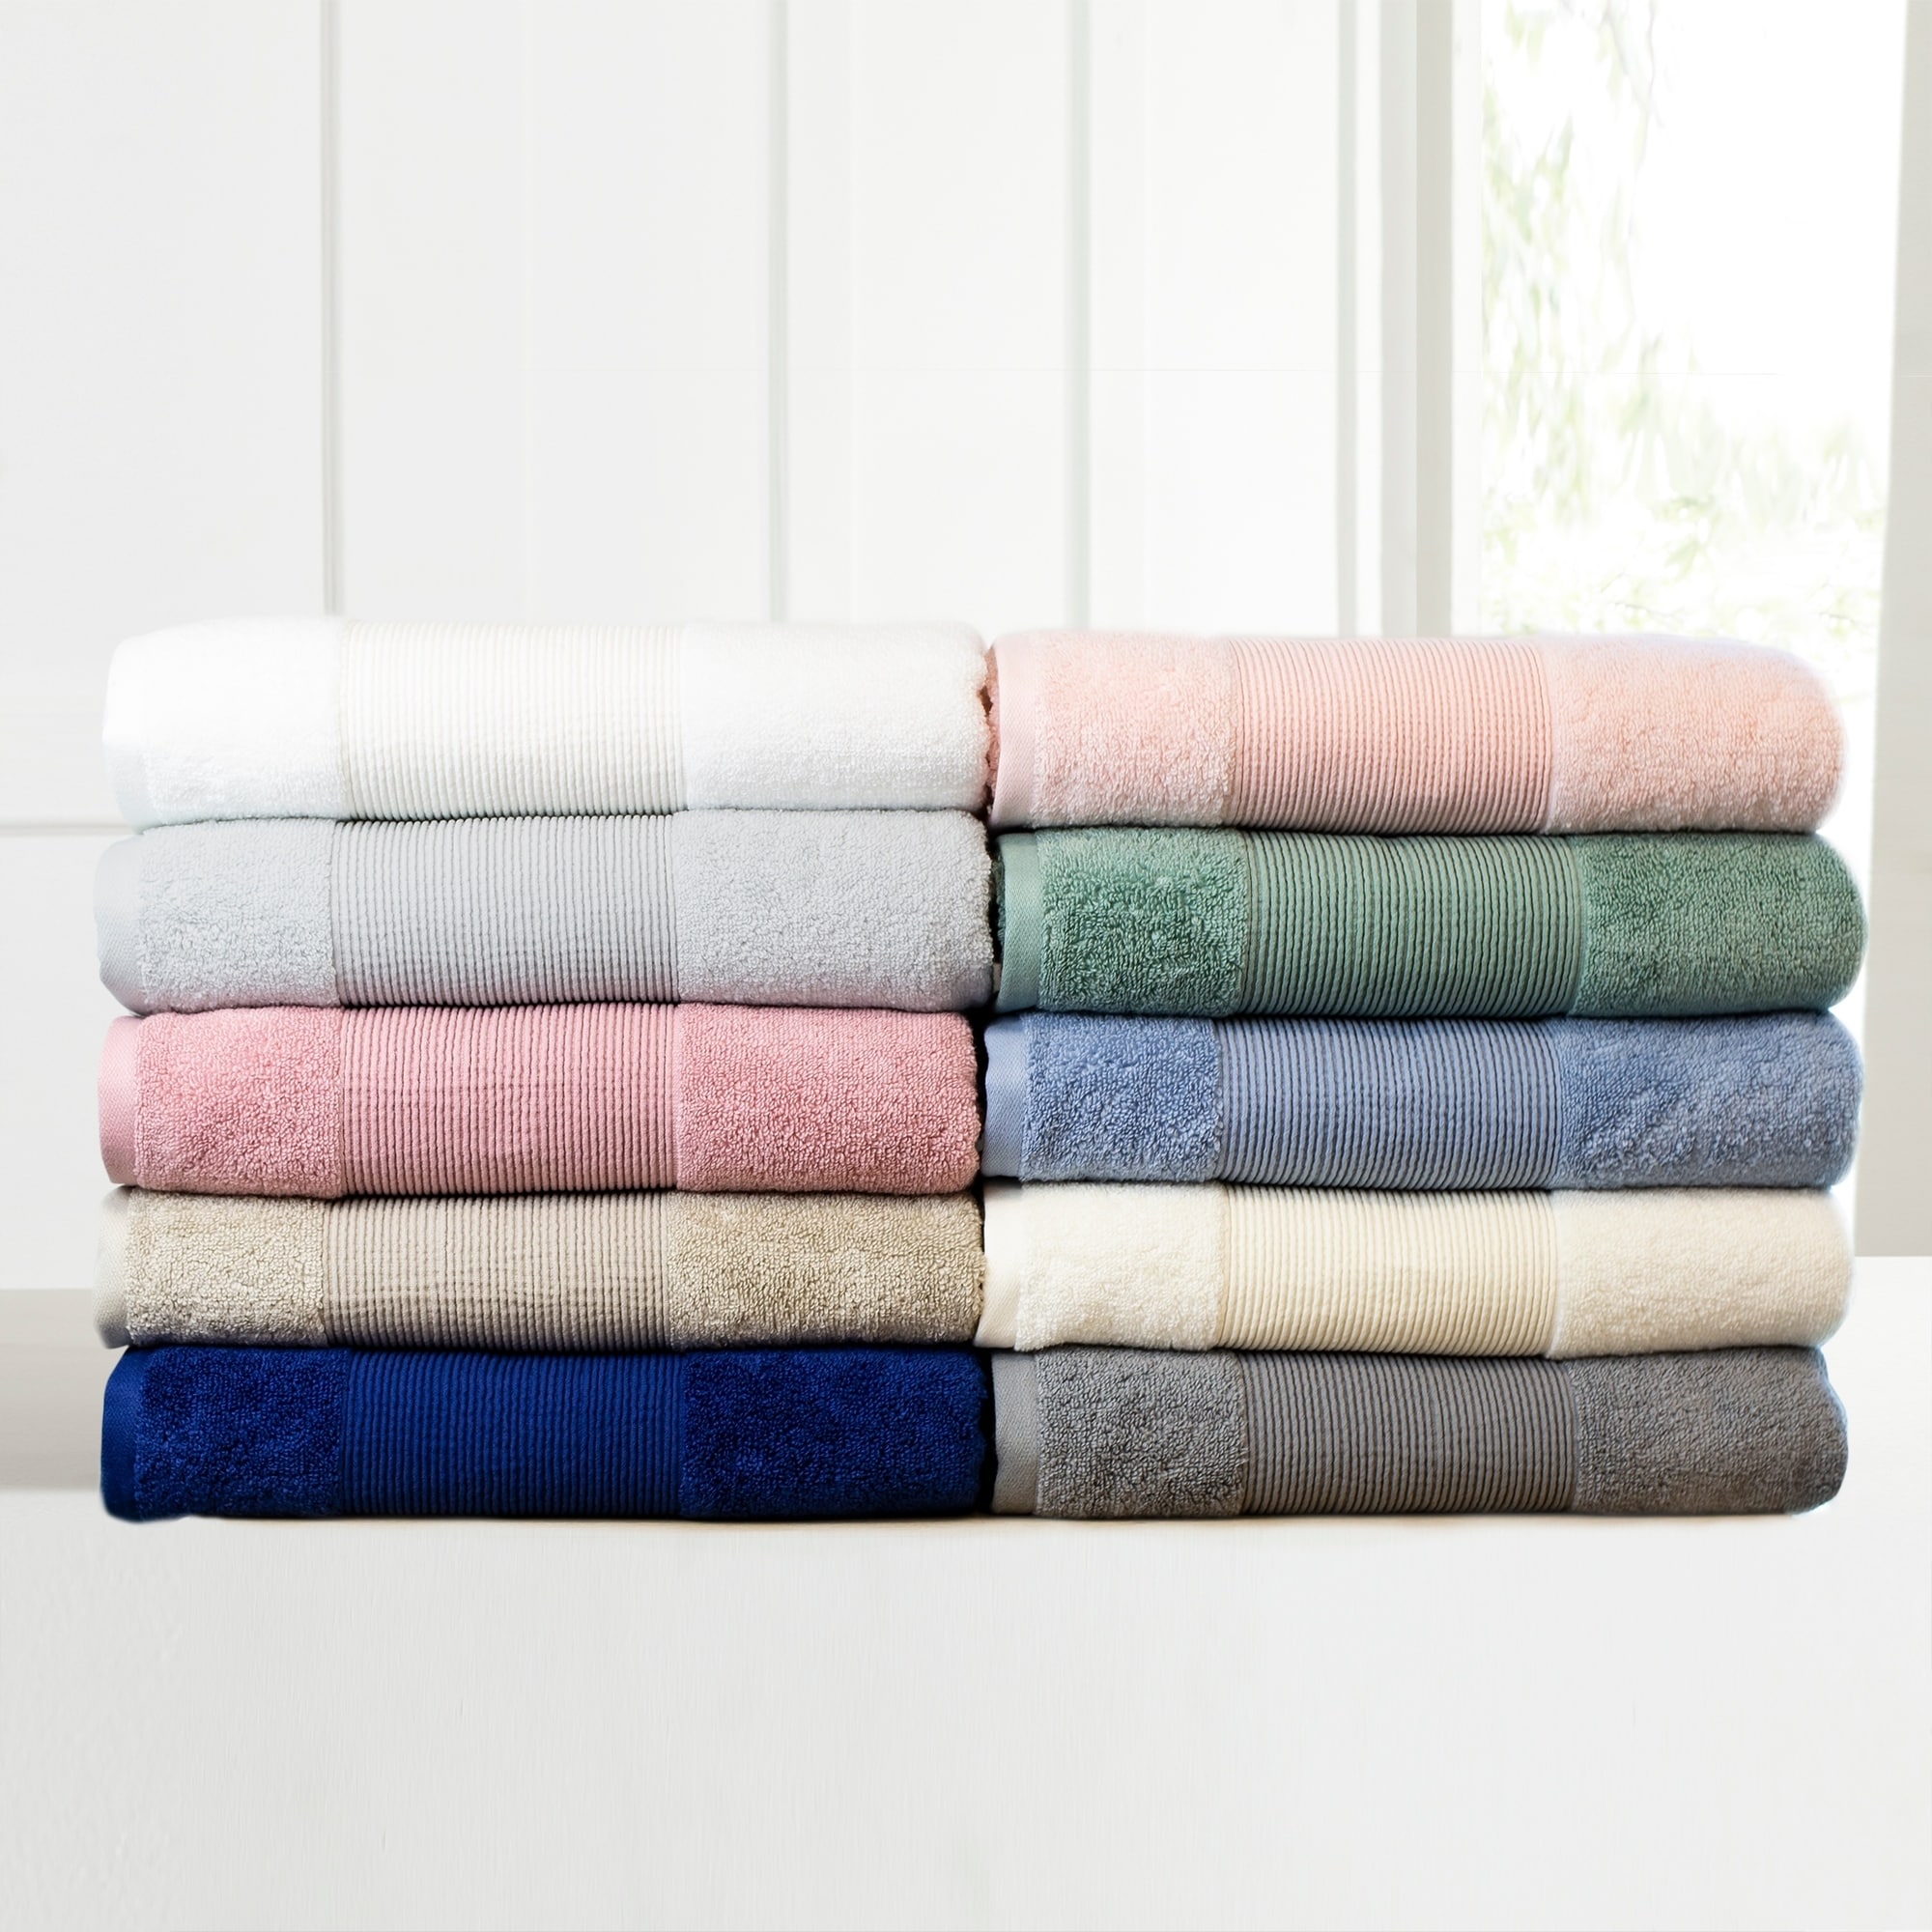 6 Piece 100% Turkish Cotton Bath Towel Set-10 Set Case Pack